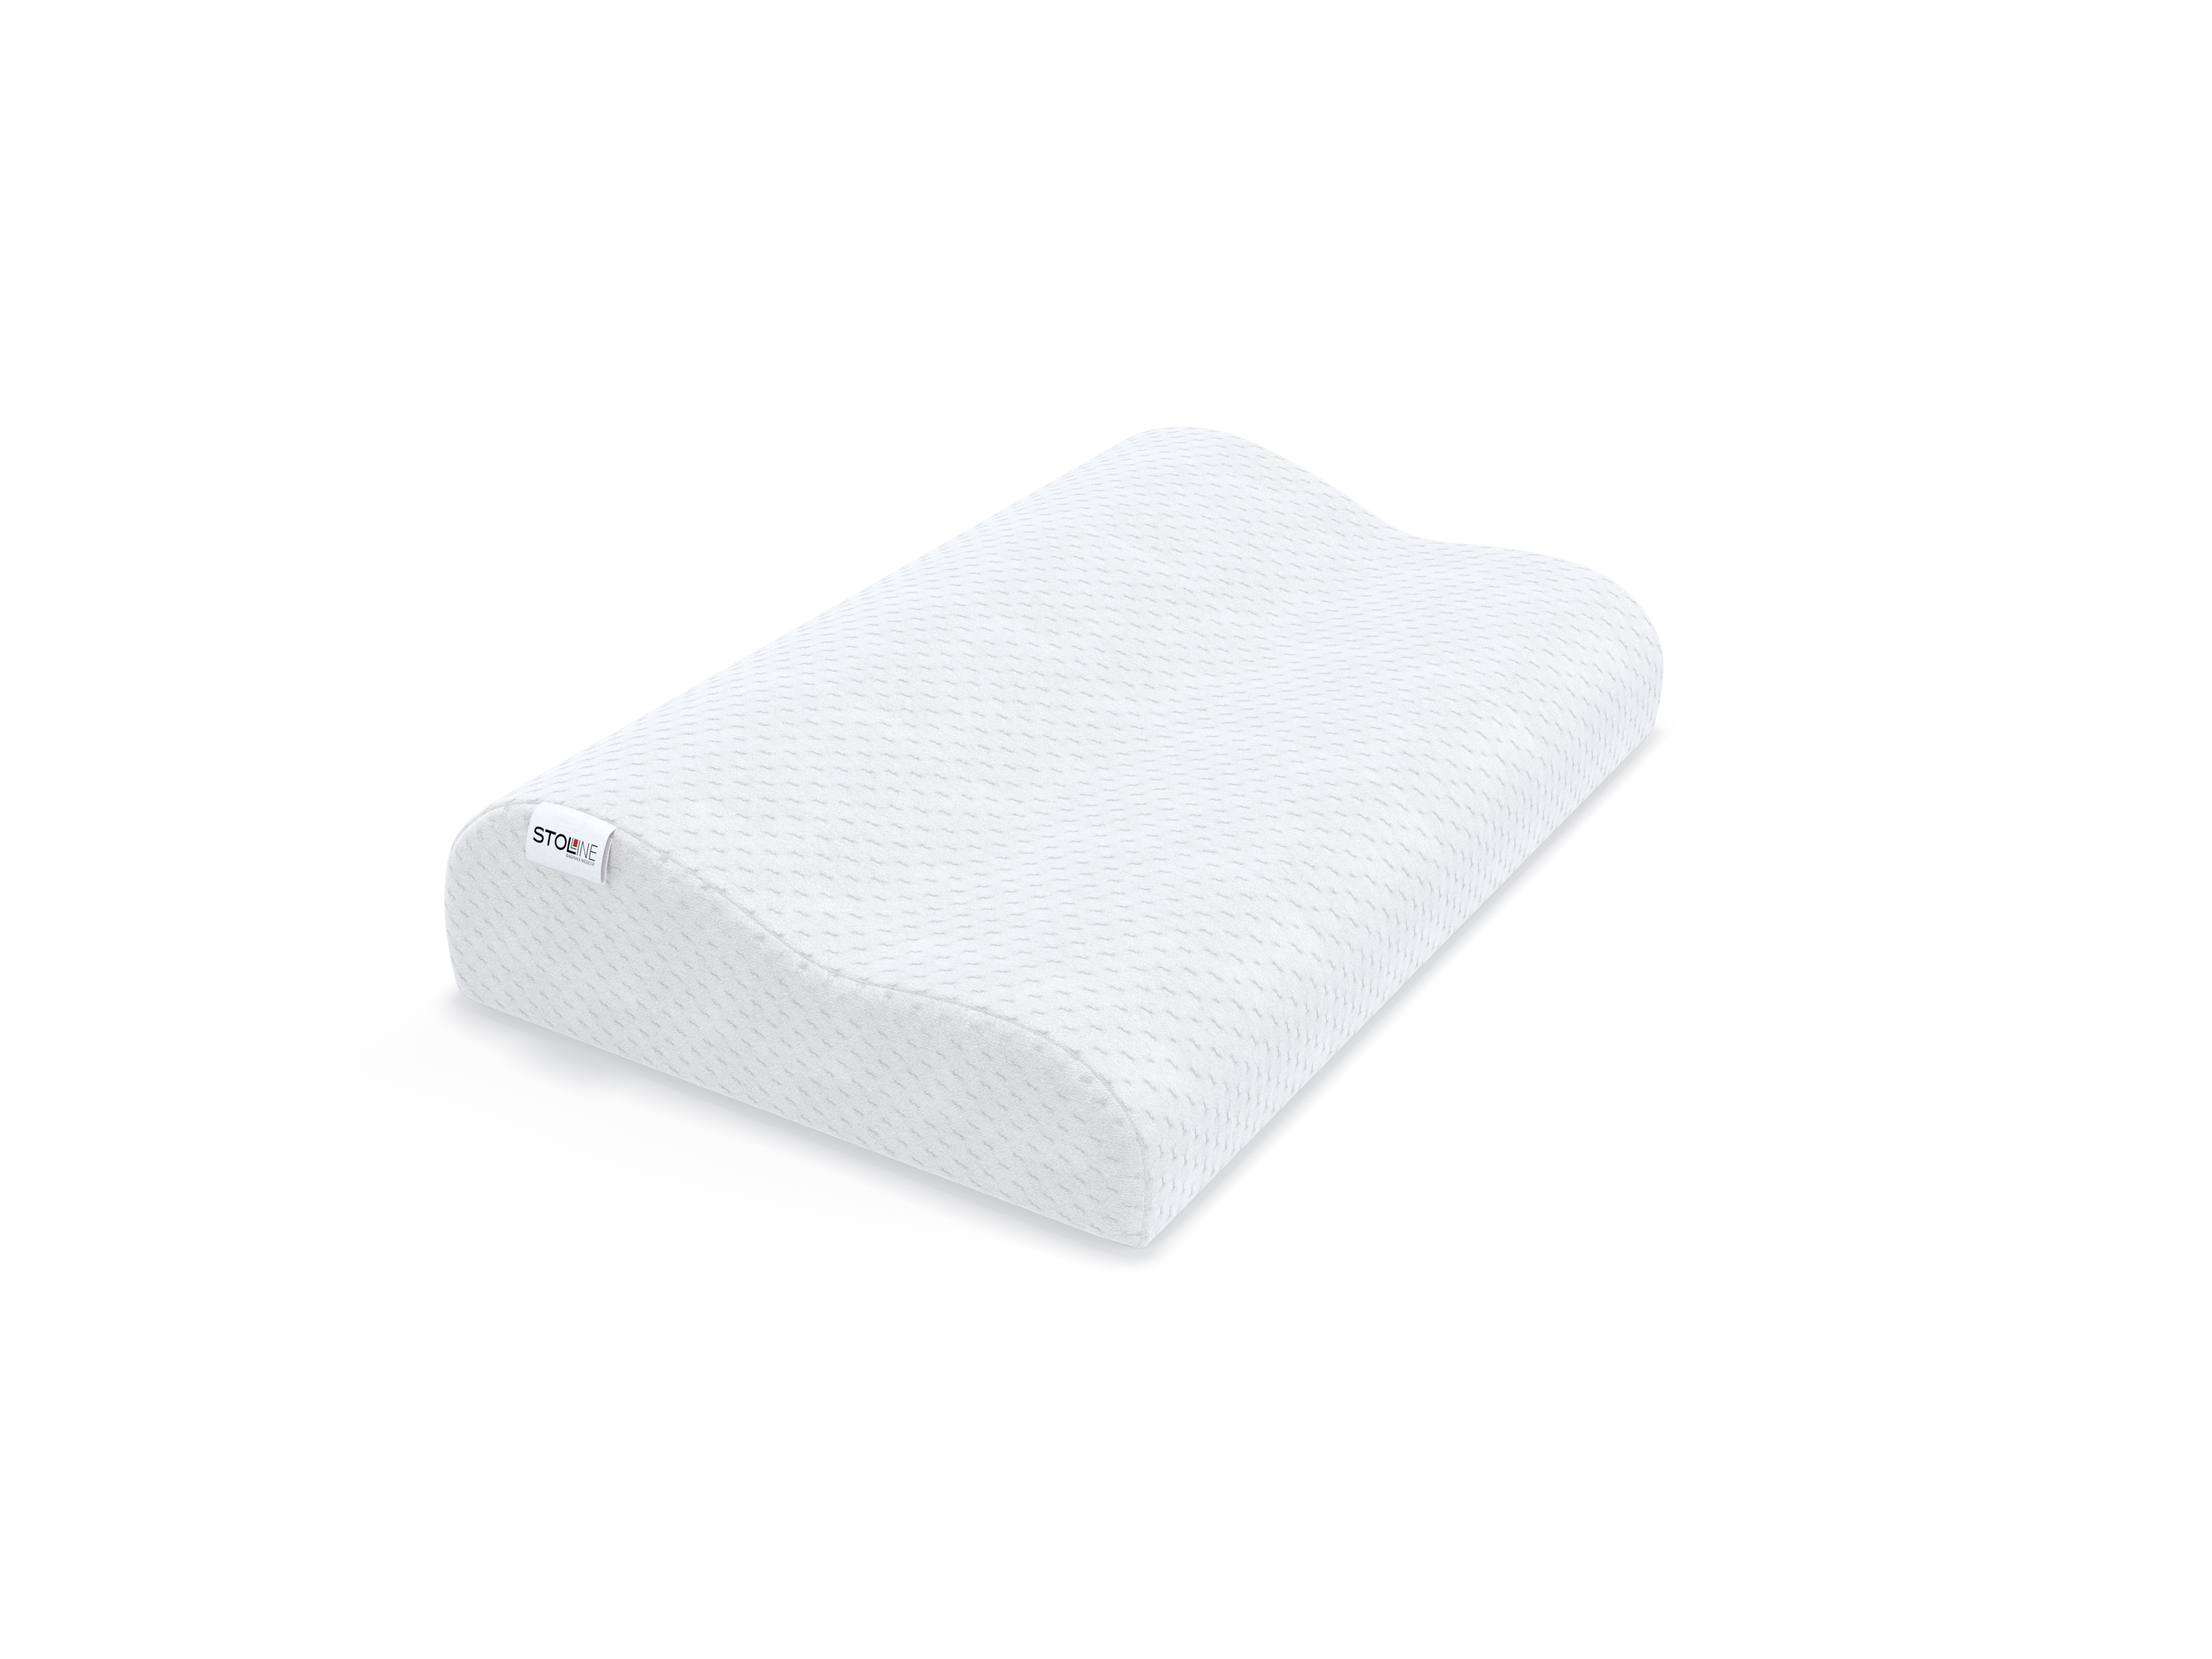 Подушка анатомическая Relax подушка relax размер 68x68 см цвет белый